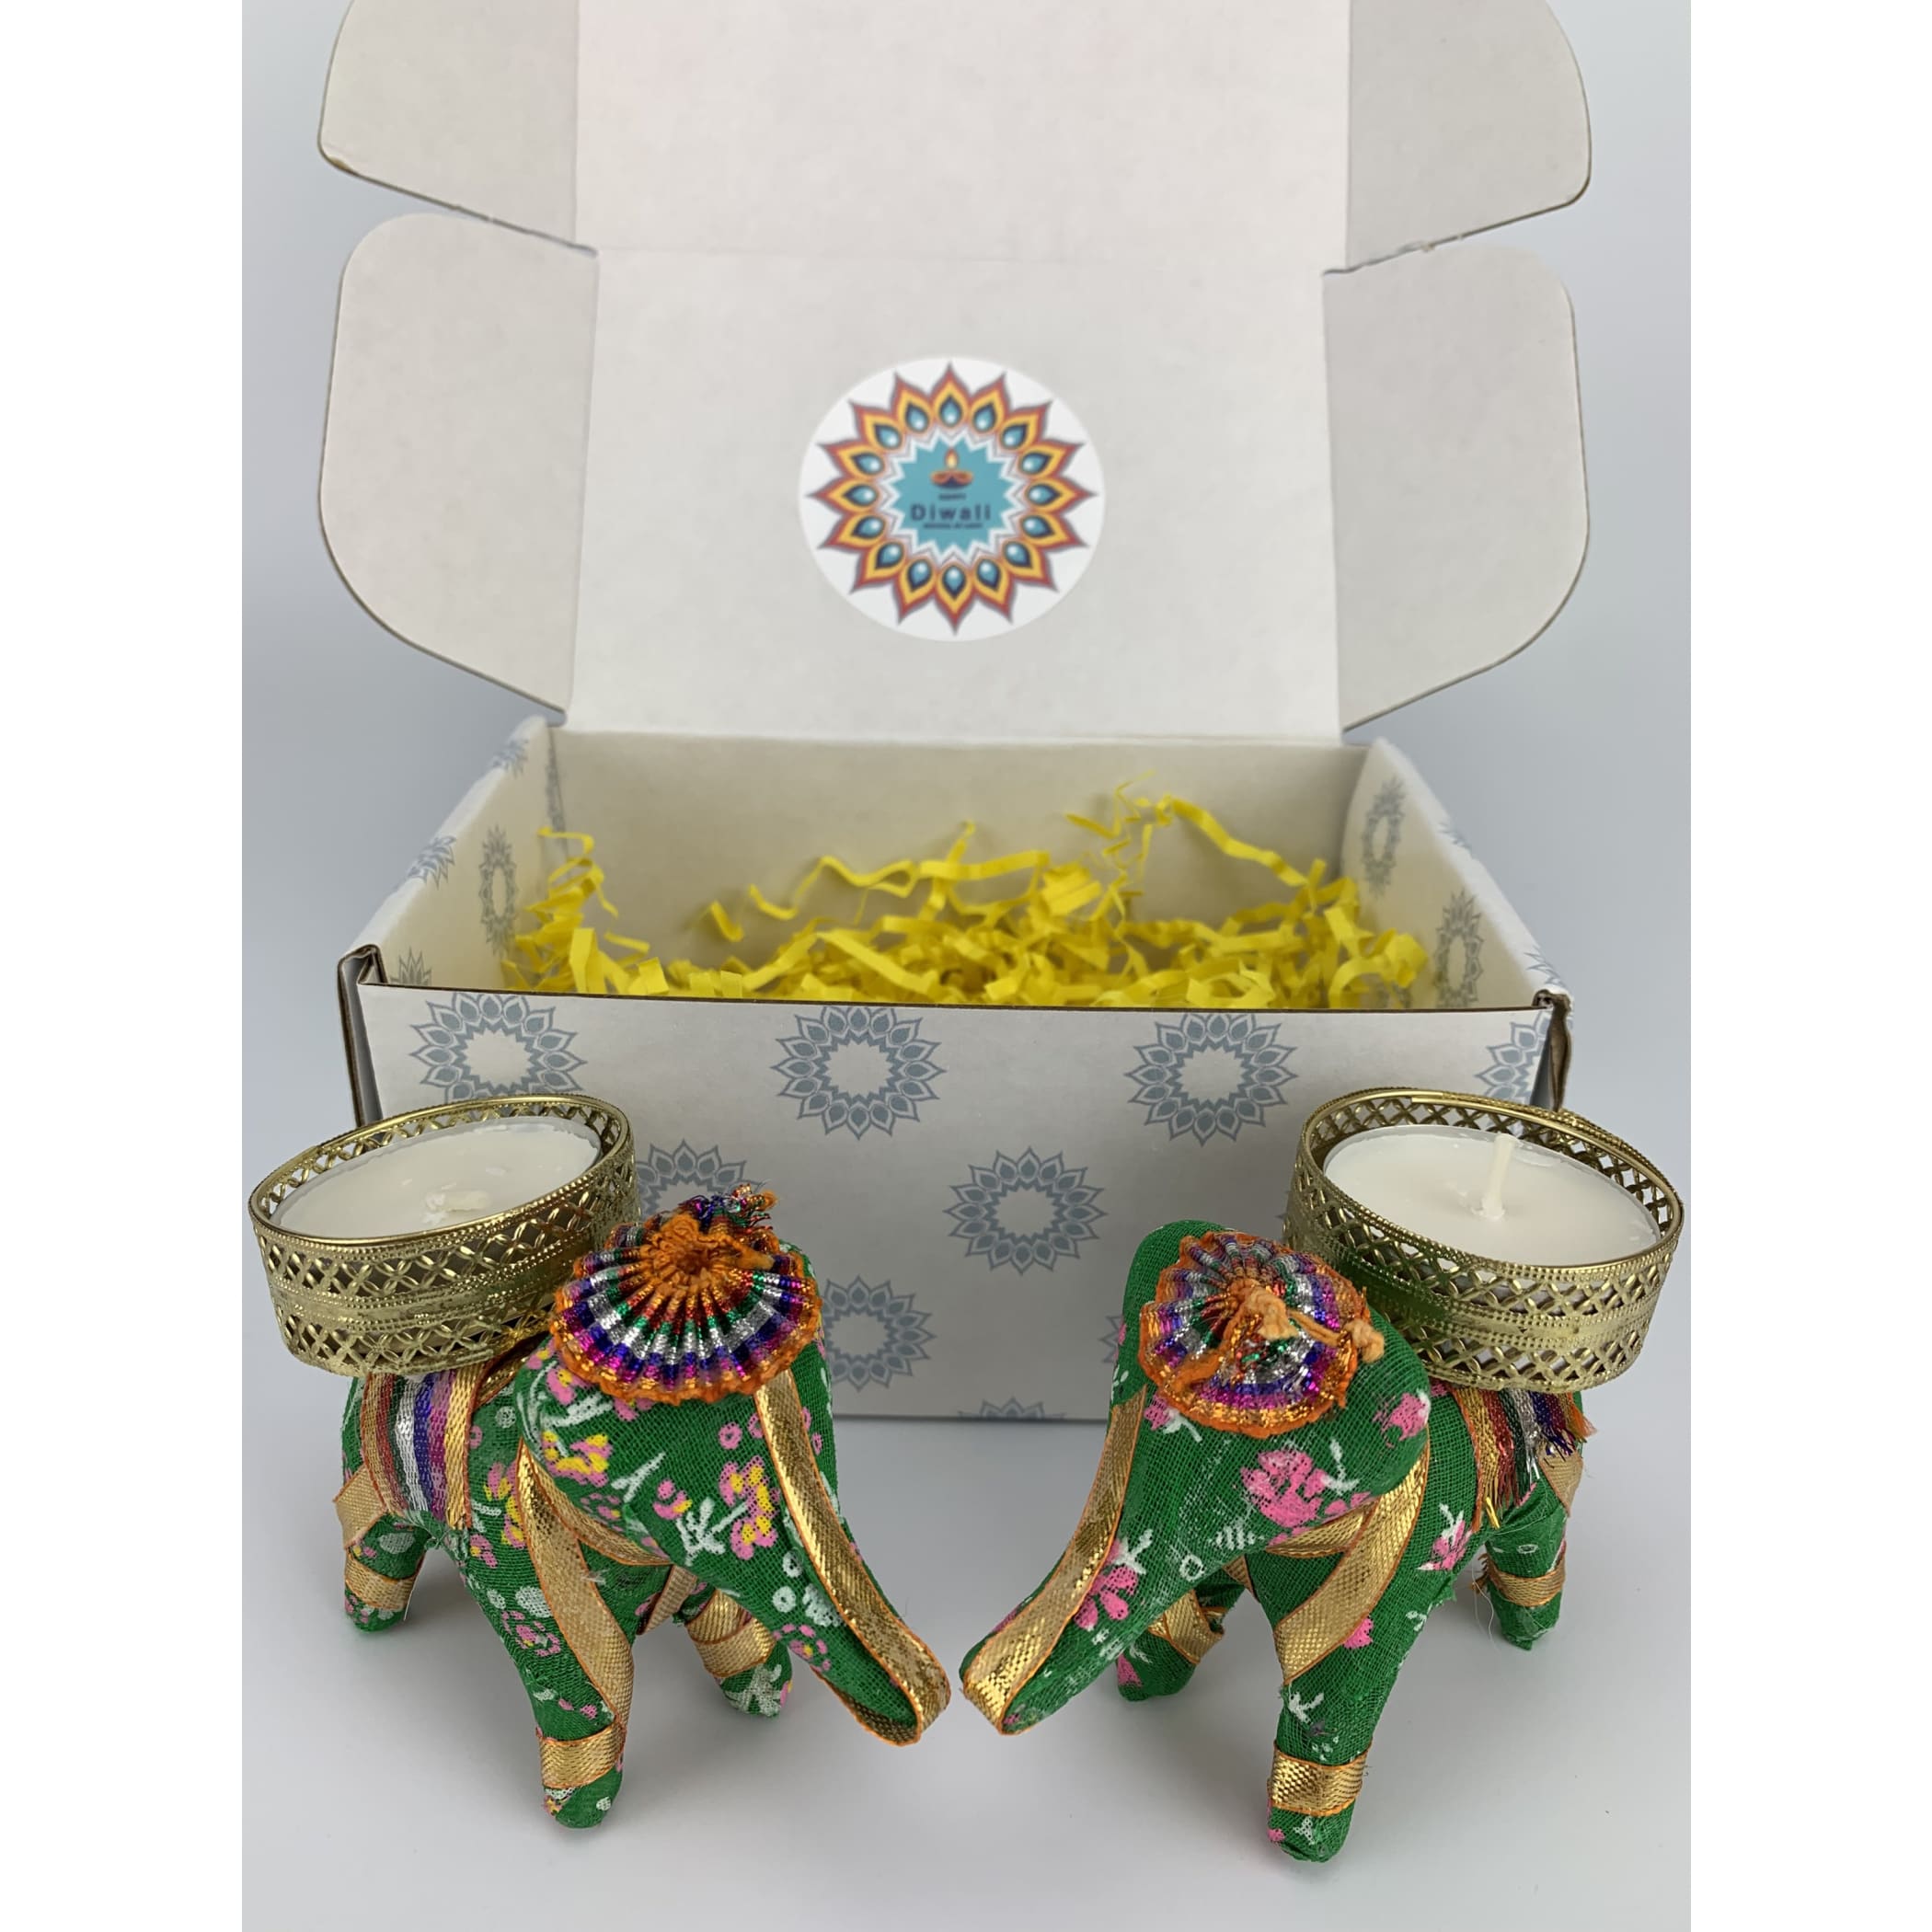 Diwali gift box usa hamper tealight holder basket decor diya